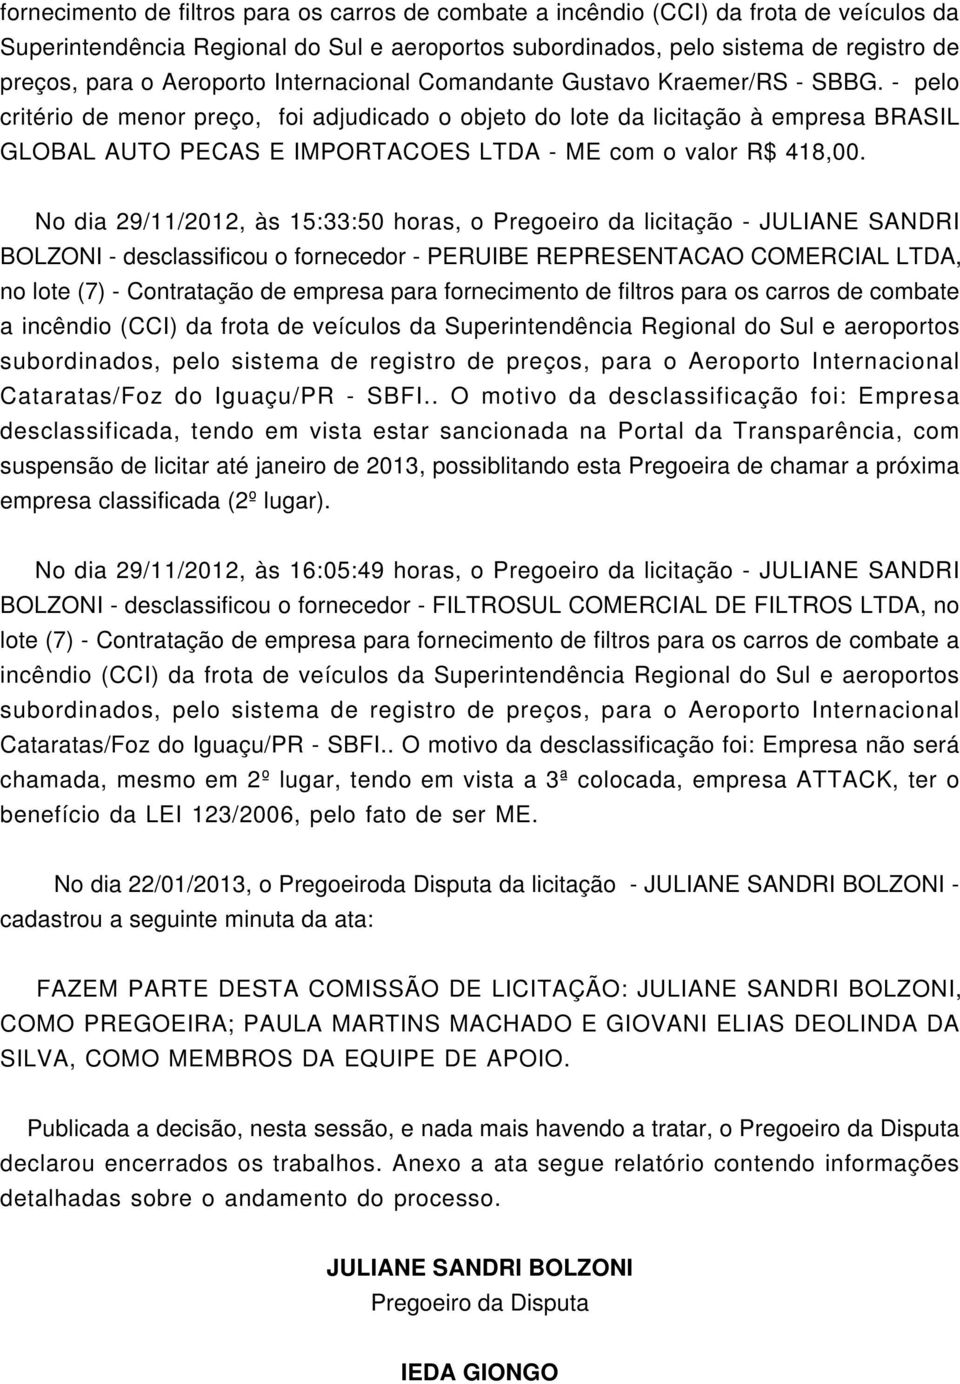 No dia 29/11/2012, às 15:33:50 horas, o Pregoeiro da licitação - JULIANE SANDRI BOLZONI - desclassificou o fornecedor - PERUIBE REPRESENTACAO CORCIAL LTDA, no lote (7) - Contratação de empresa para